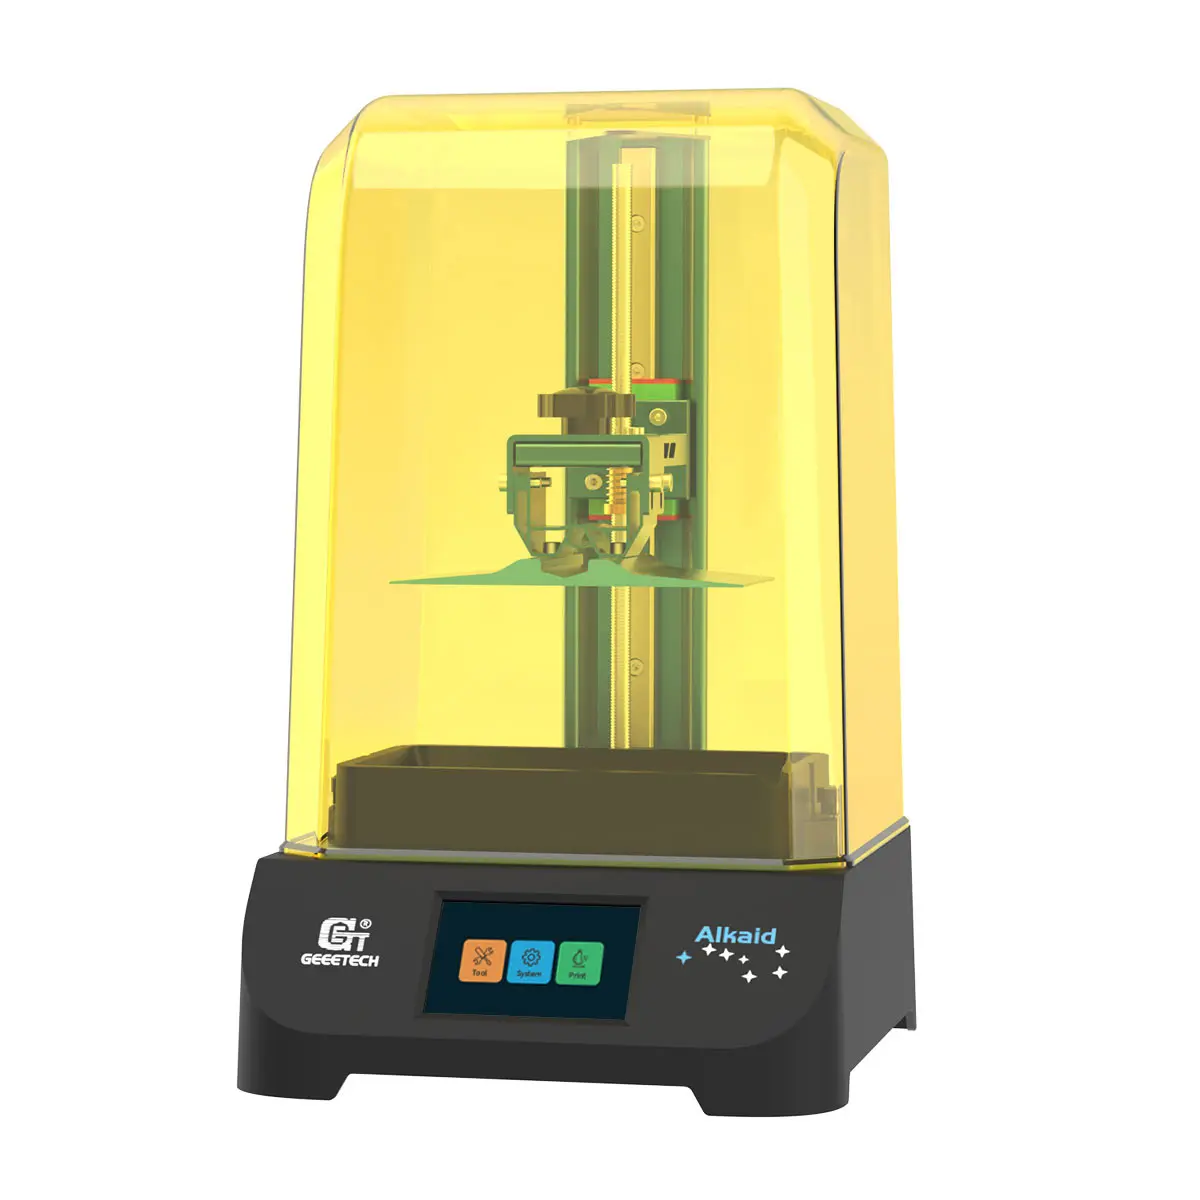 Eeetech-máquina de impresión 3D para el hogar, dispositivo de impresión lkaid de arroz